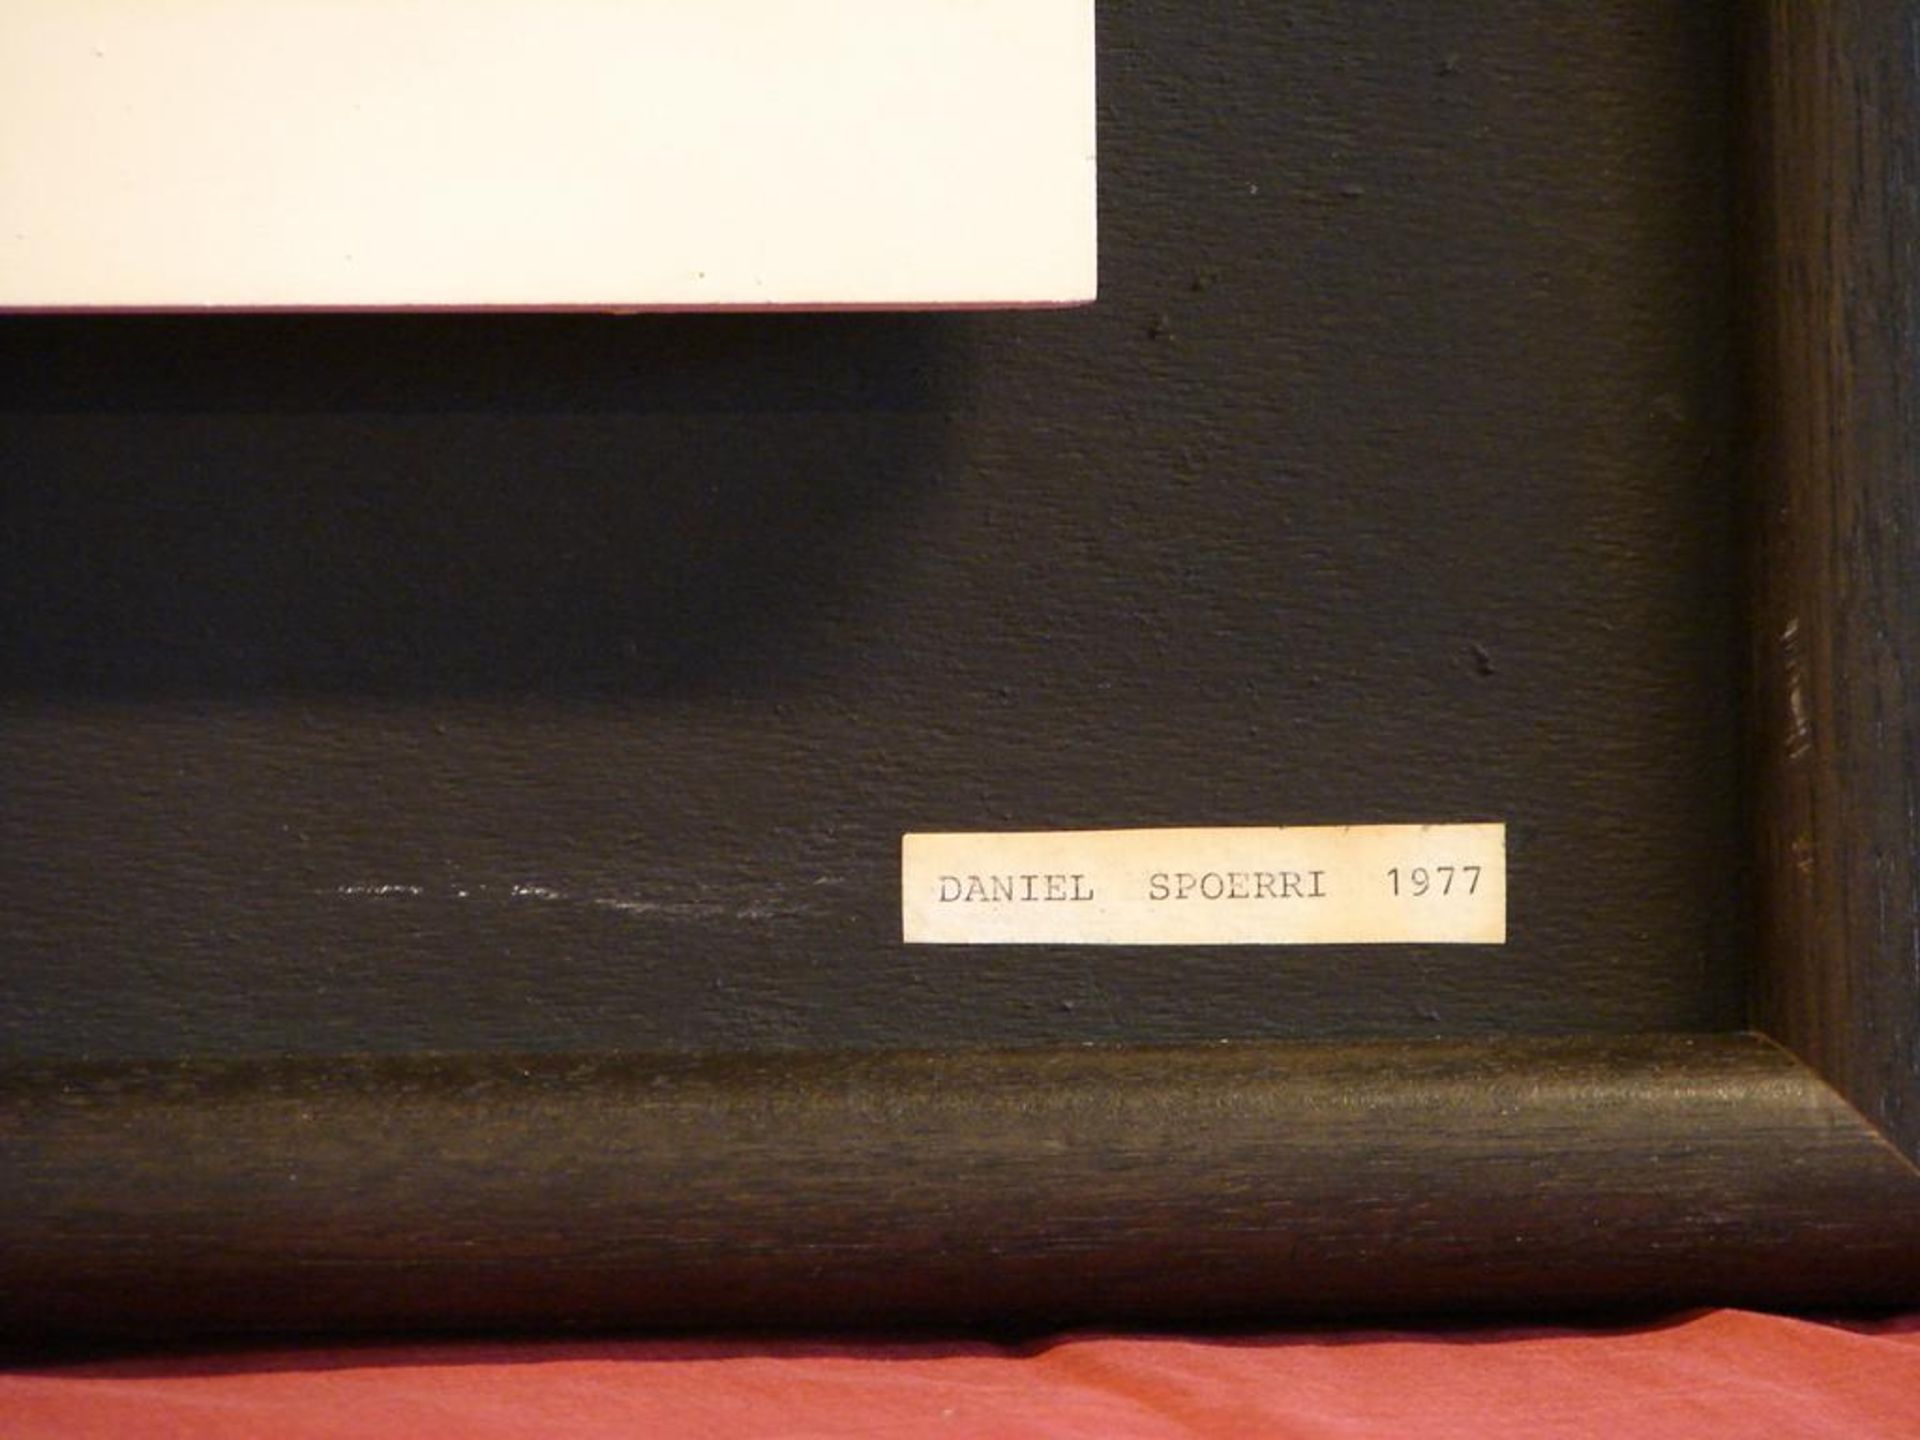 DANIEL SPOERI, Modern, Textilarbeit, dat.' 77 , bezeichnet, ca. 65x65 cm, Kein Postversand möglich - Image 2 of 3